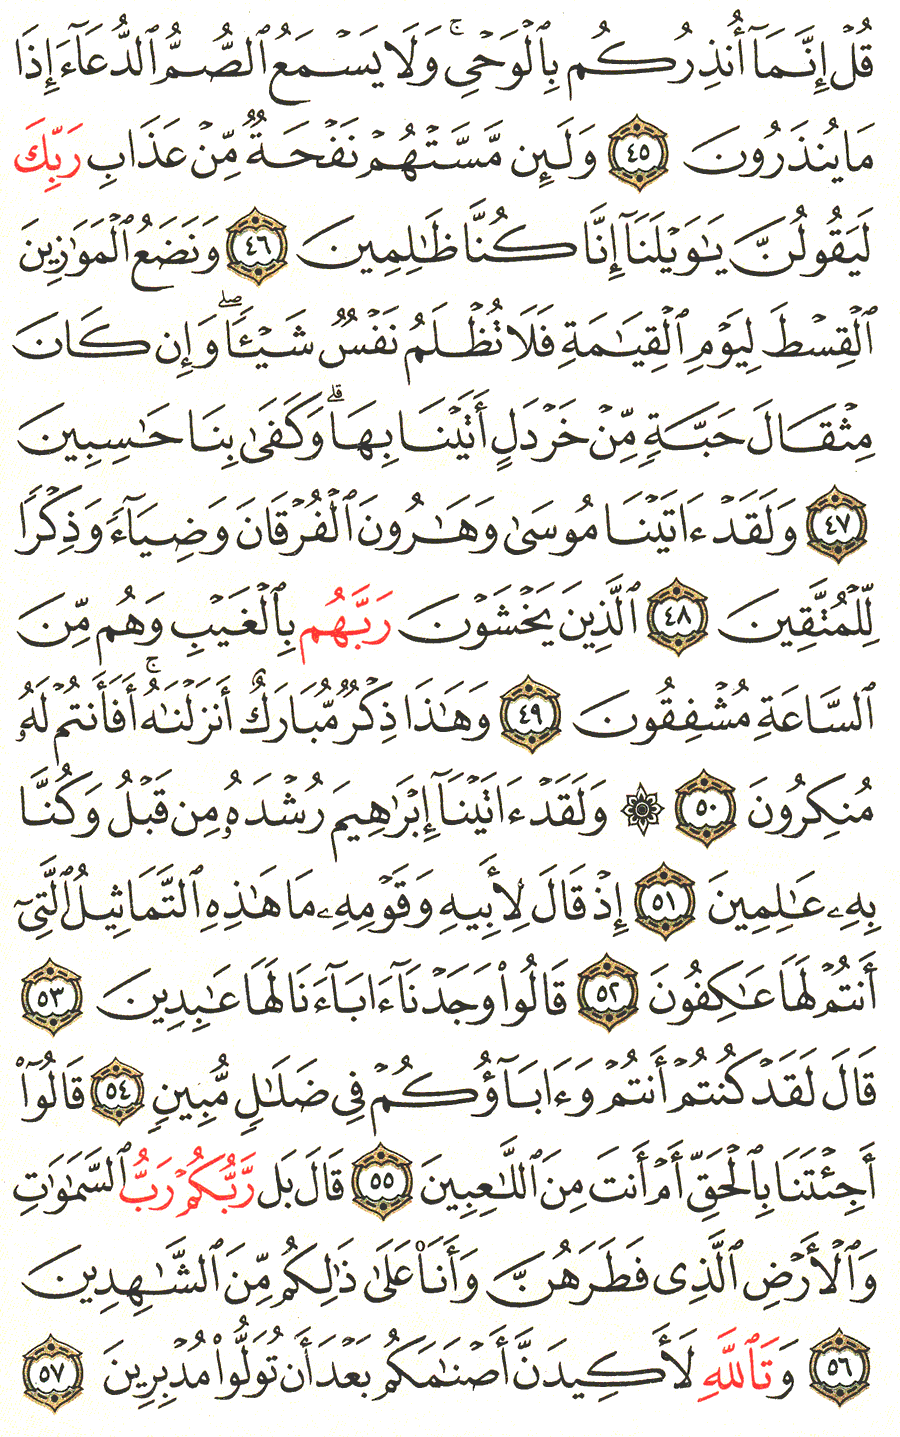 الصفحة رقم 326  من القرآن الكريم مكتوبة من المصحف